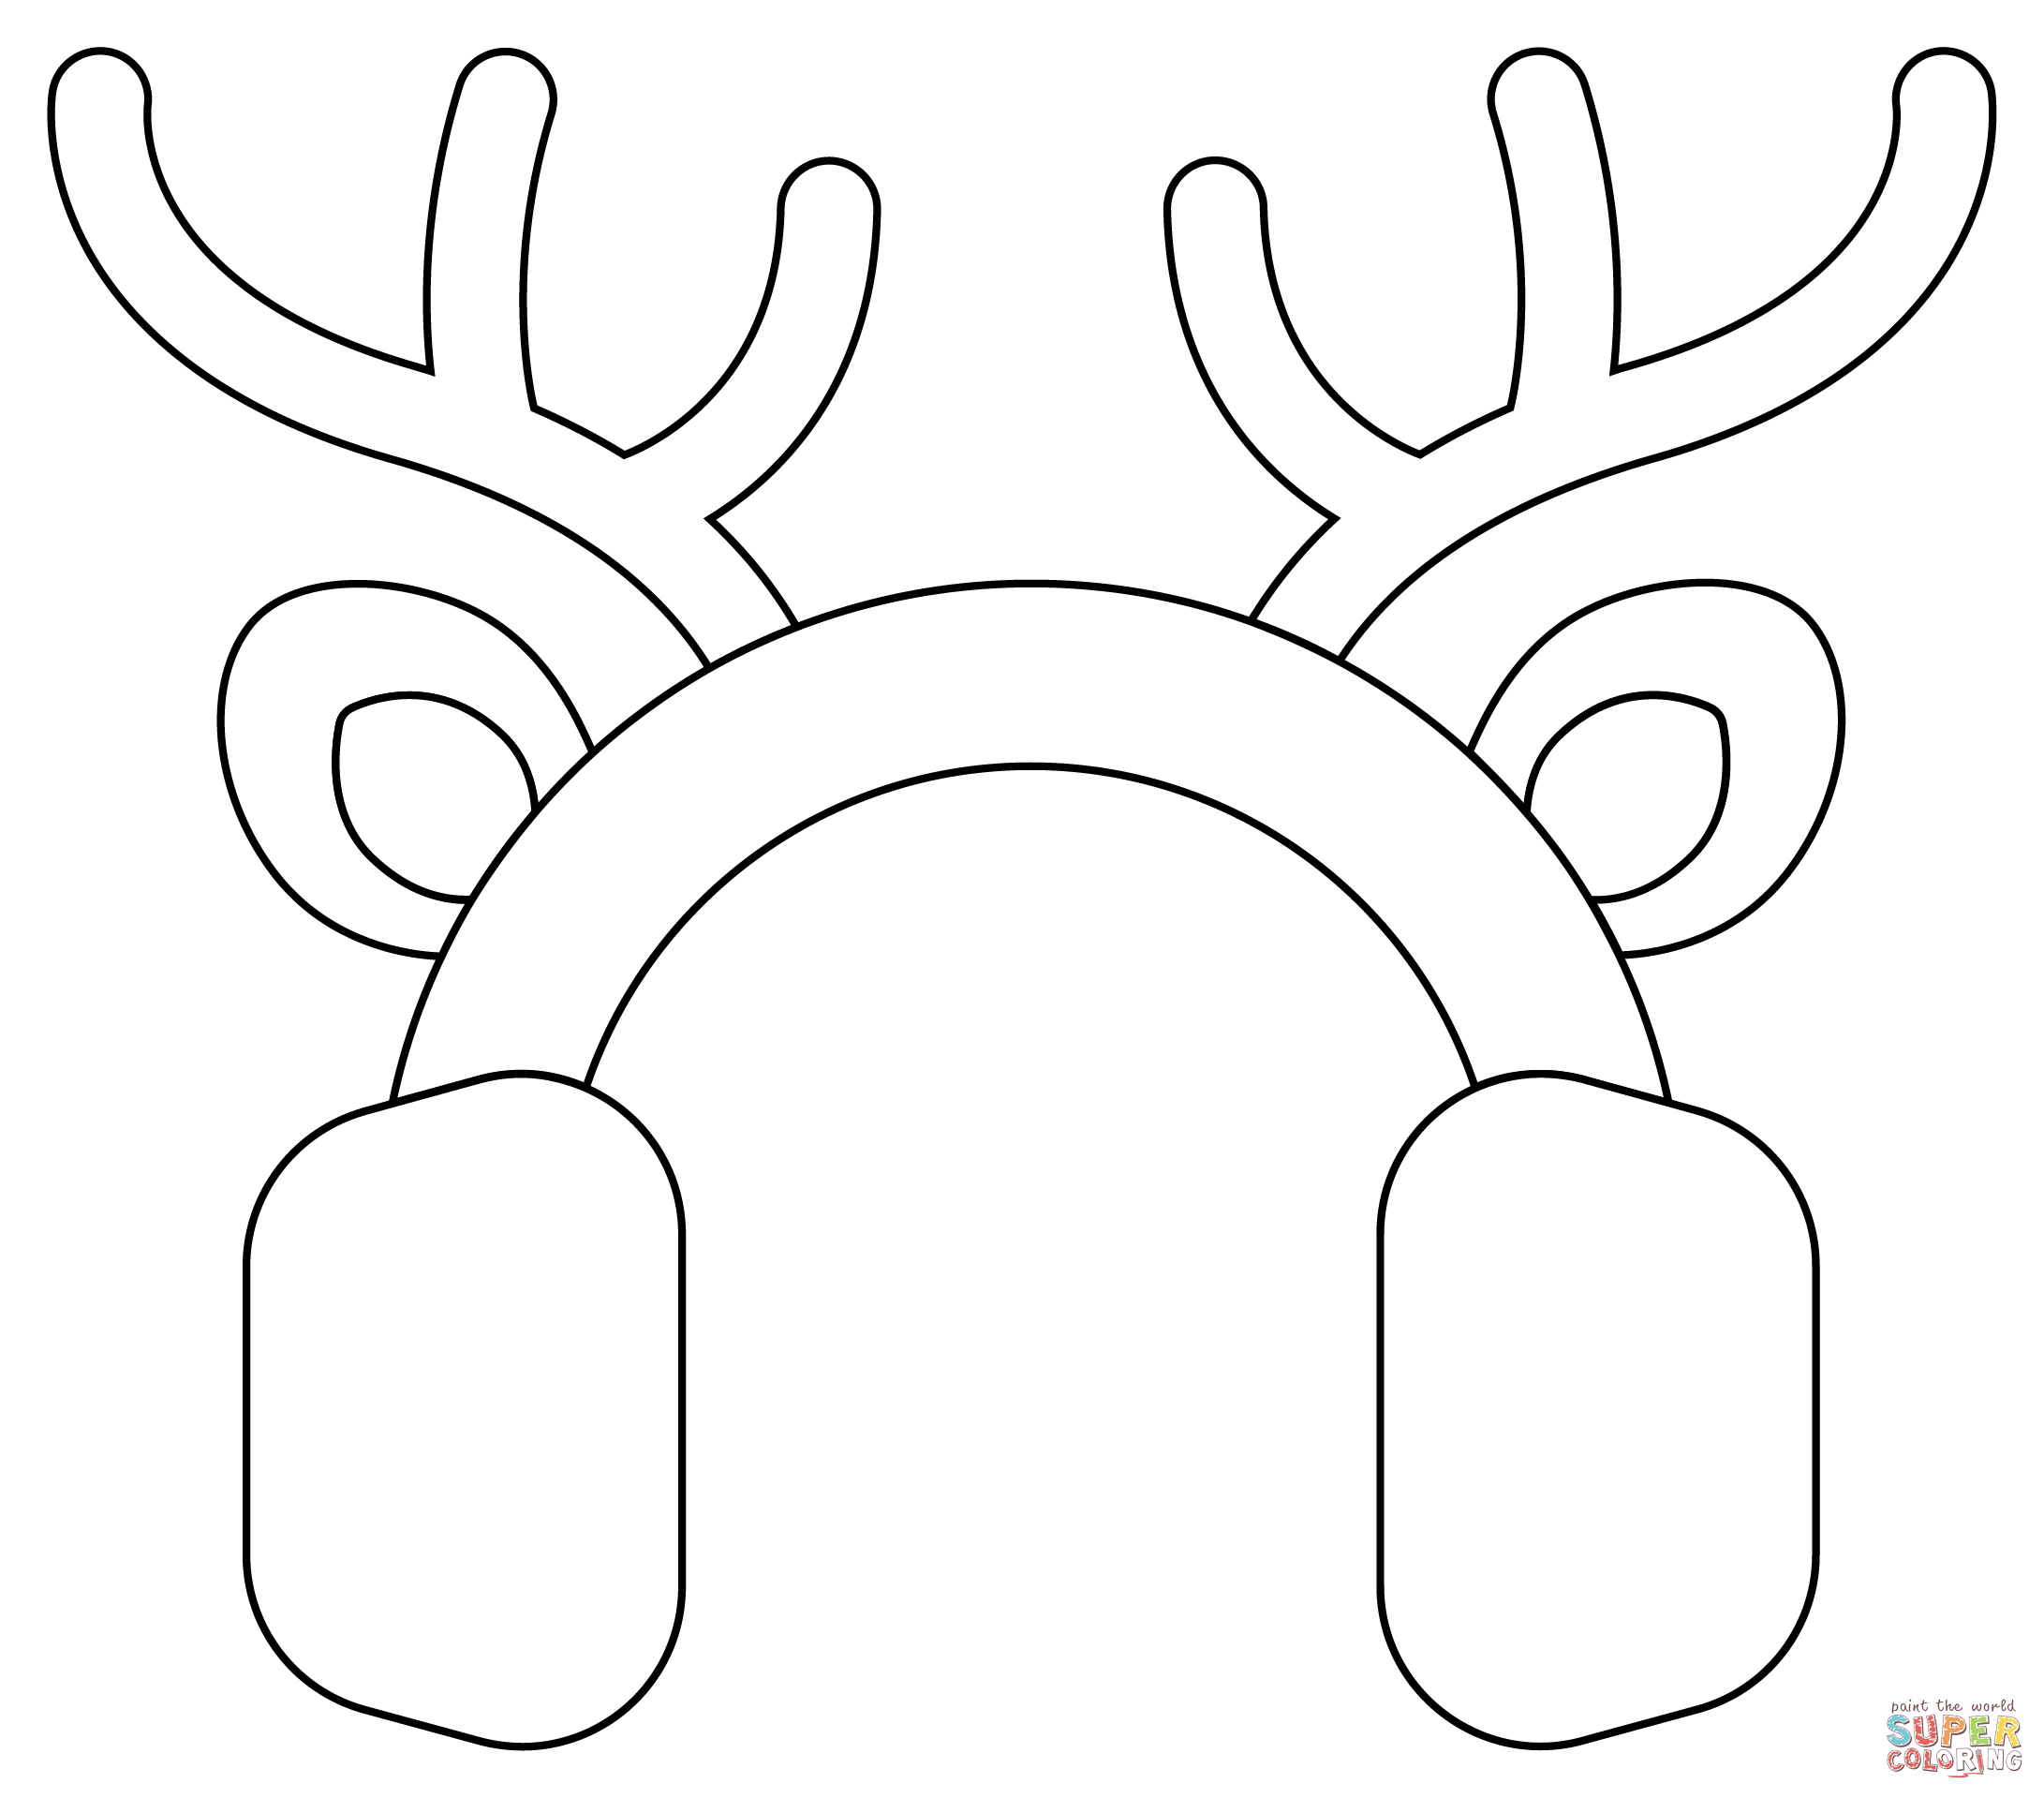 Reindeer antlers coloring page free printable coloring pages